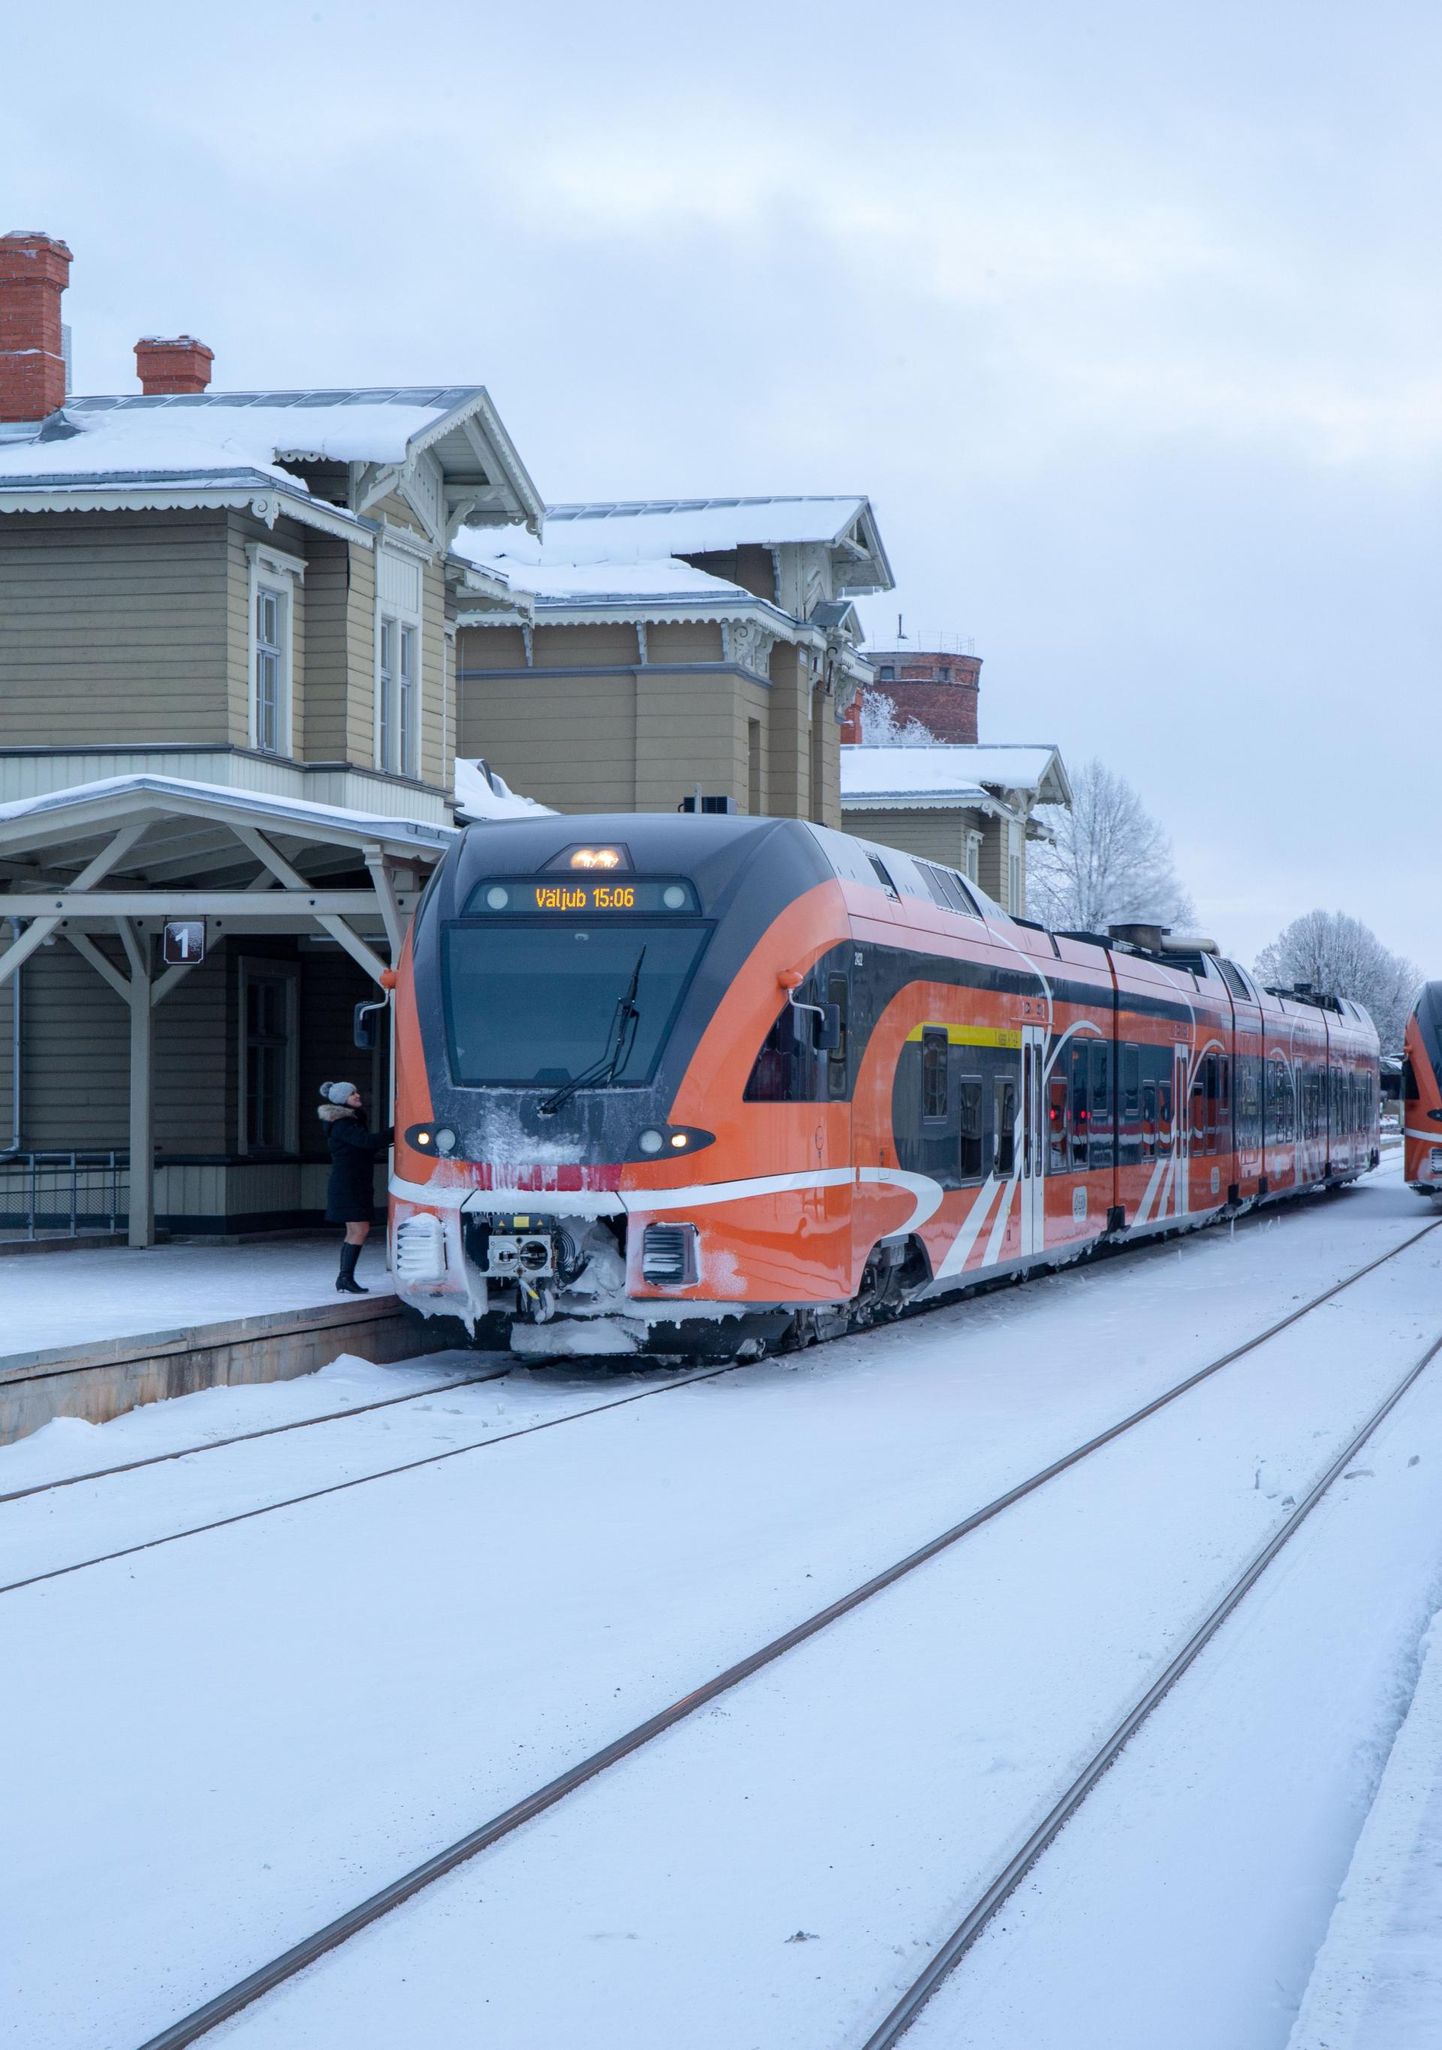 Eesti Raudtee peab kõnelusi rahvusvahelise rongiliikluse taasatamiseks Tartust. Viimati sai ümberistumiseta sõita rongiga Tartust Riiga 1990. aastatel, kui sõitis Balti Ekspress.